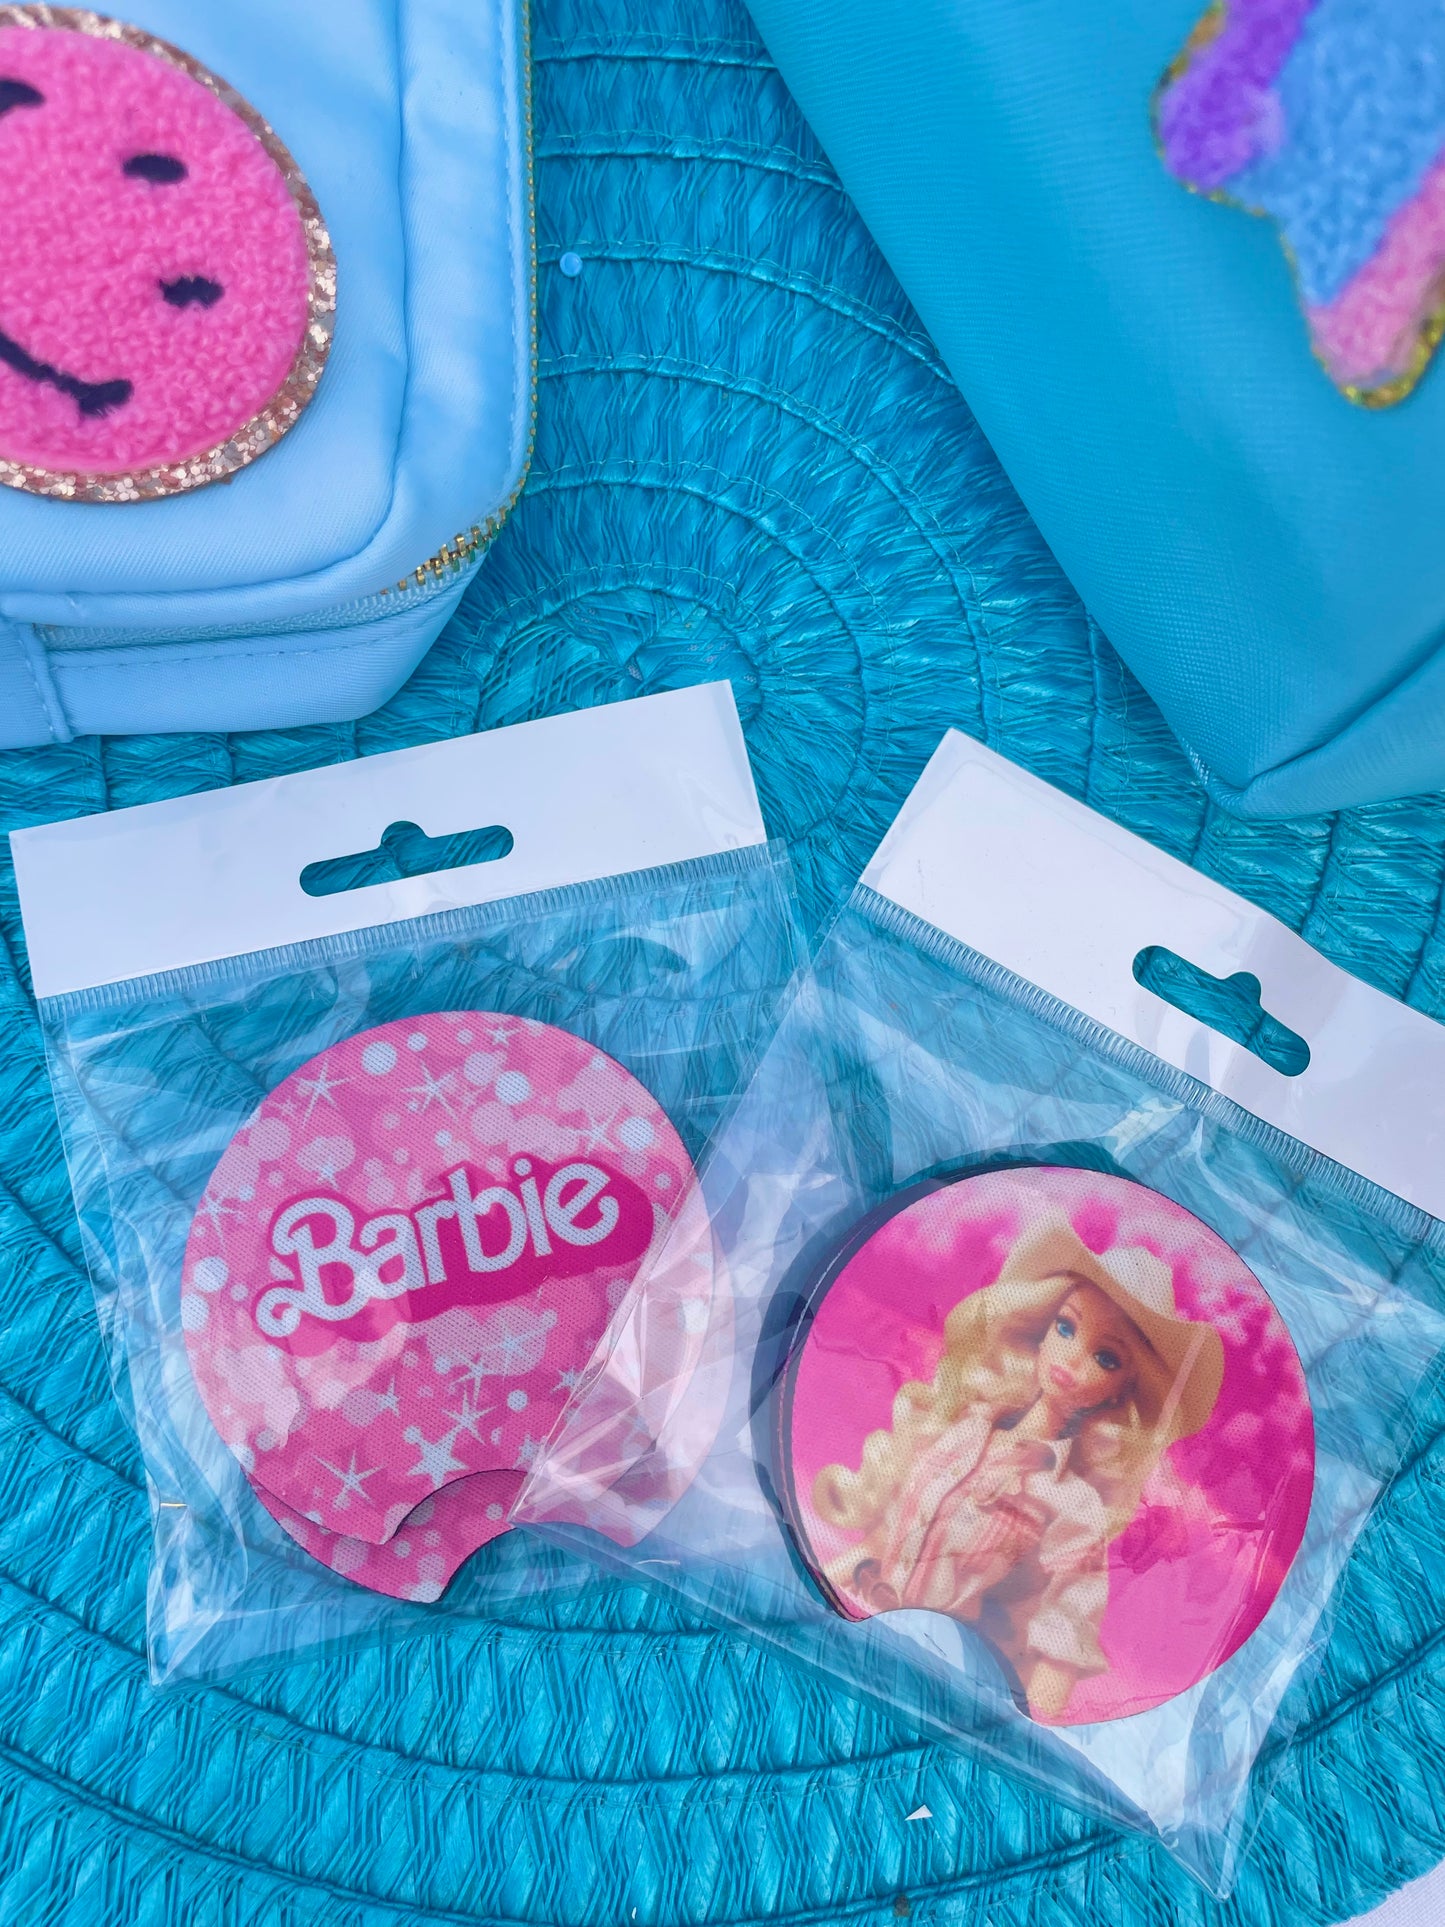 Barbie Dream Car - Cup Coasters